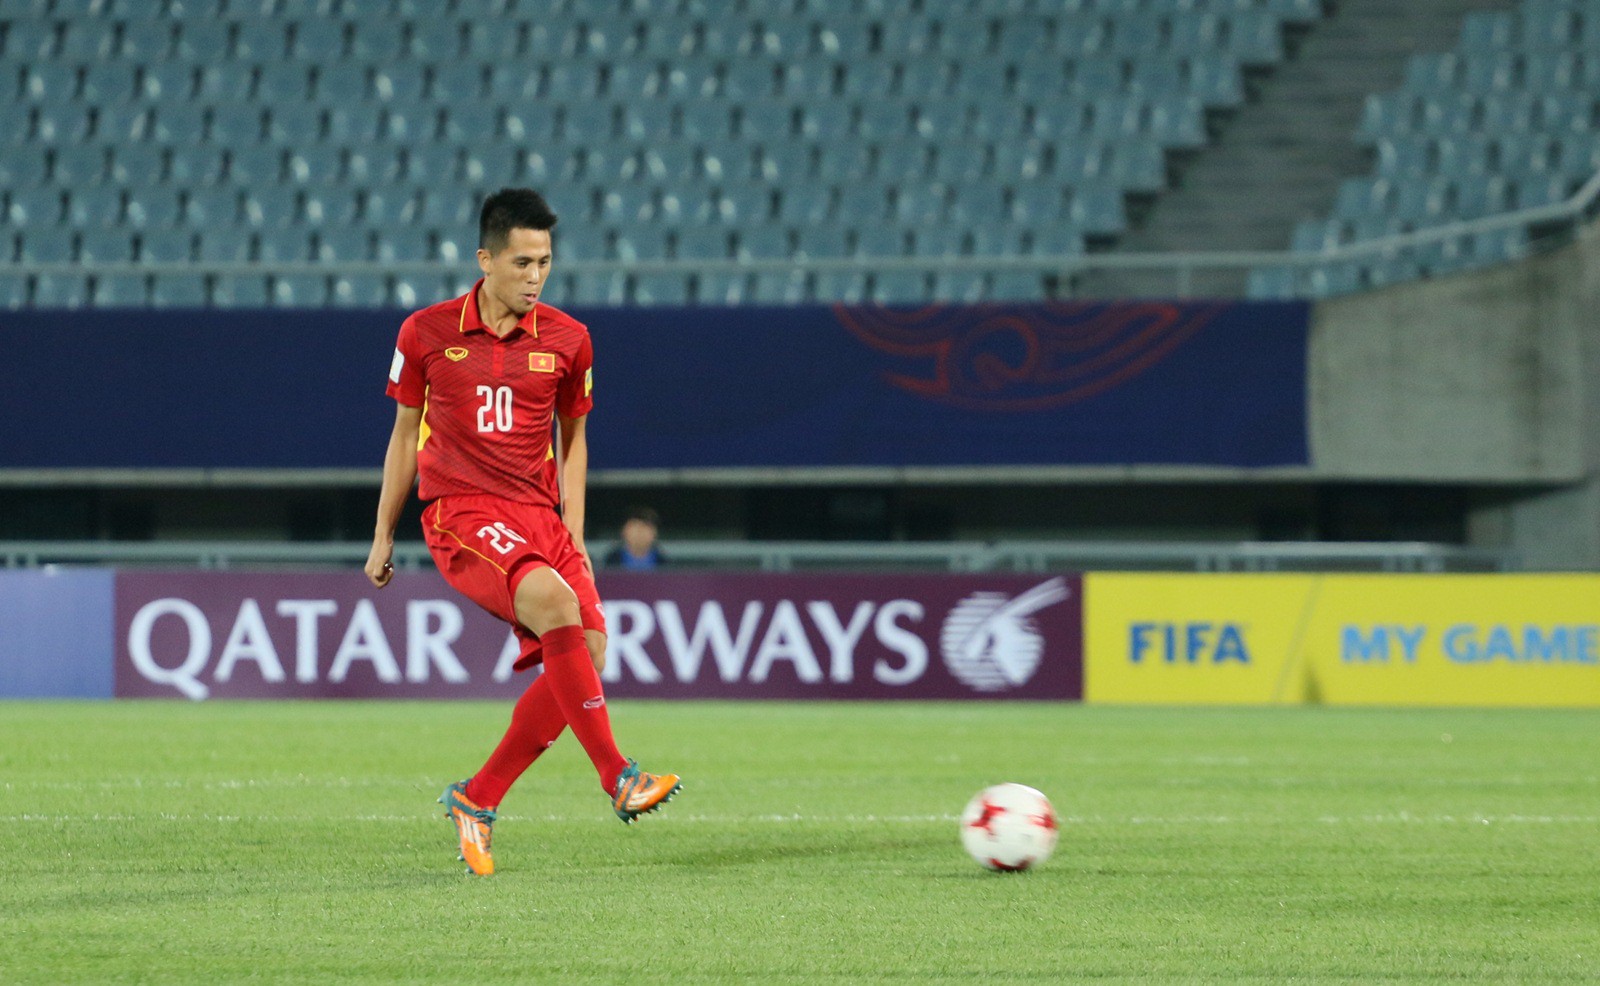 Đình Trọng thể hiện sự chững chạc trong lần đầu tiên tham dự U20 World Cup. Ảnh Quang Thịnh